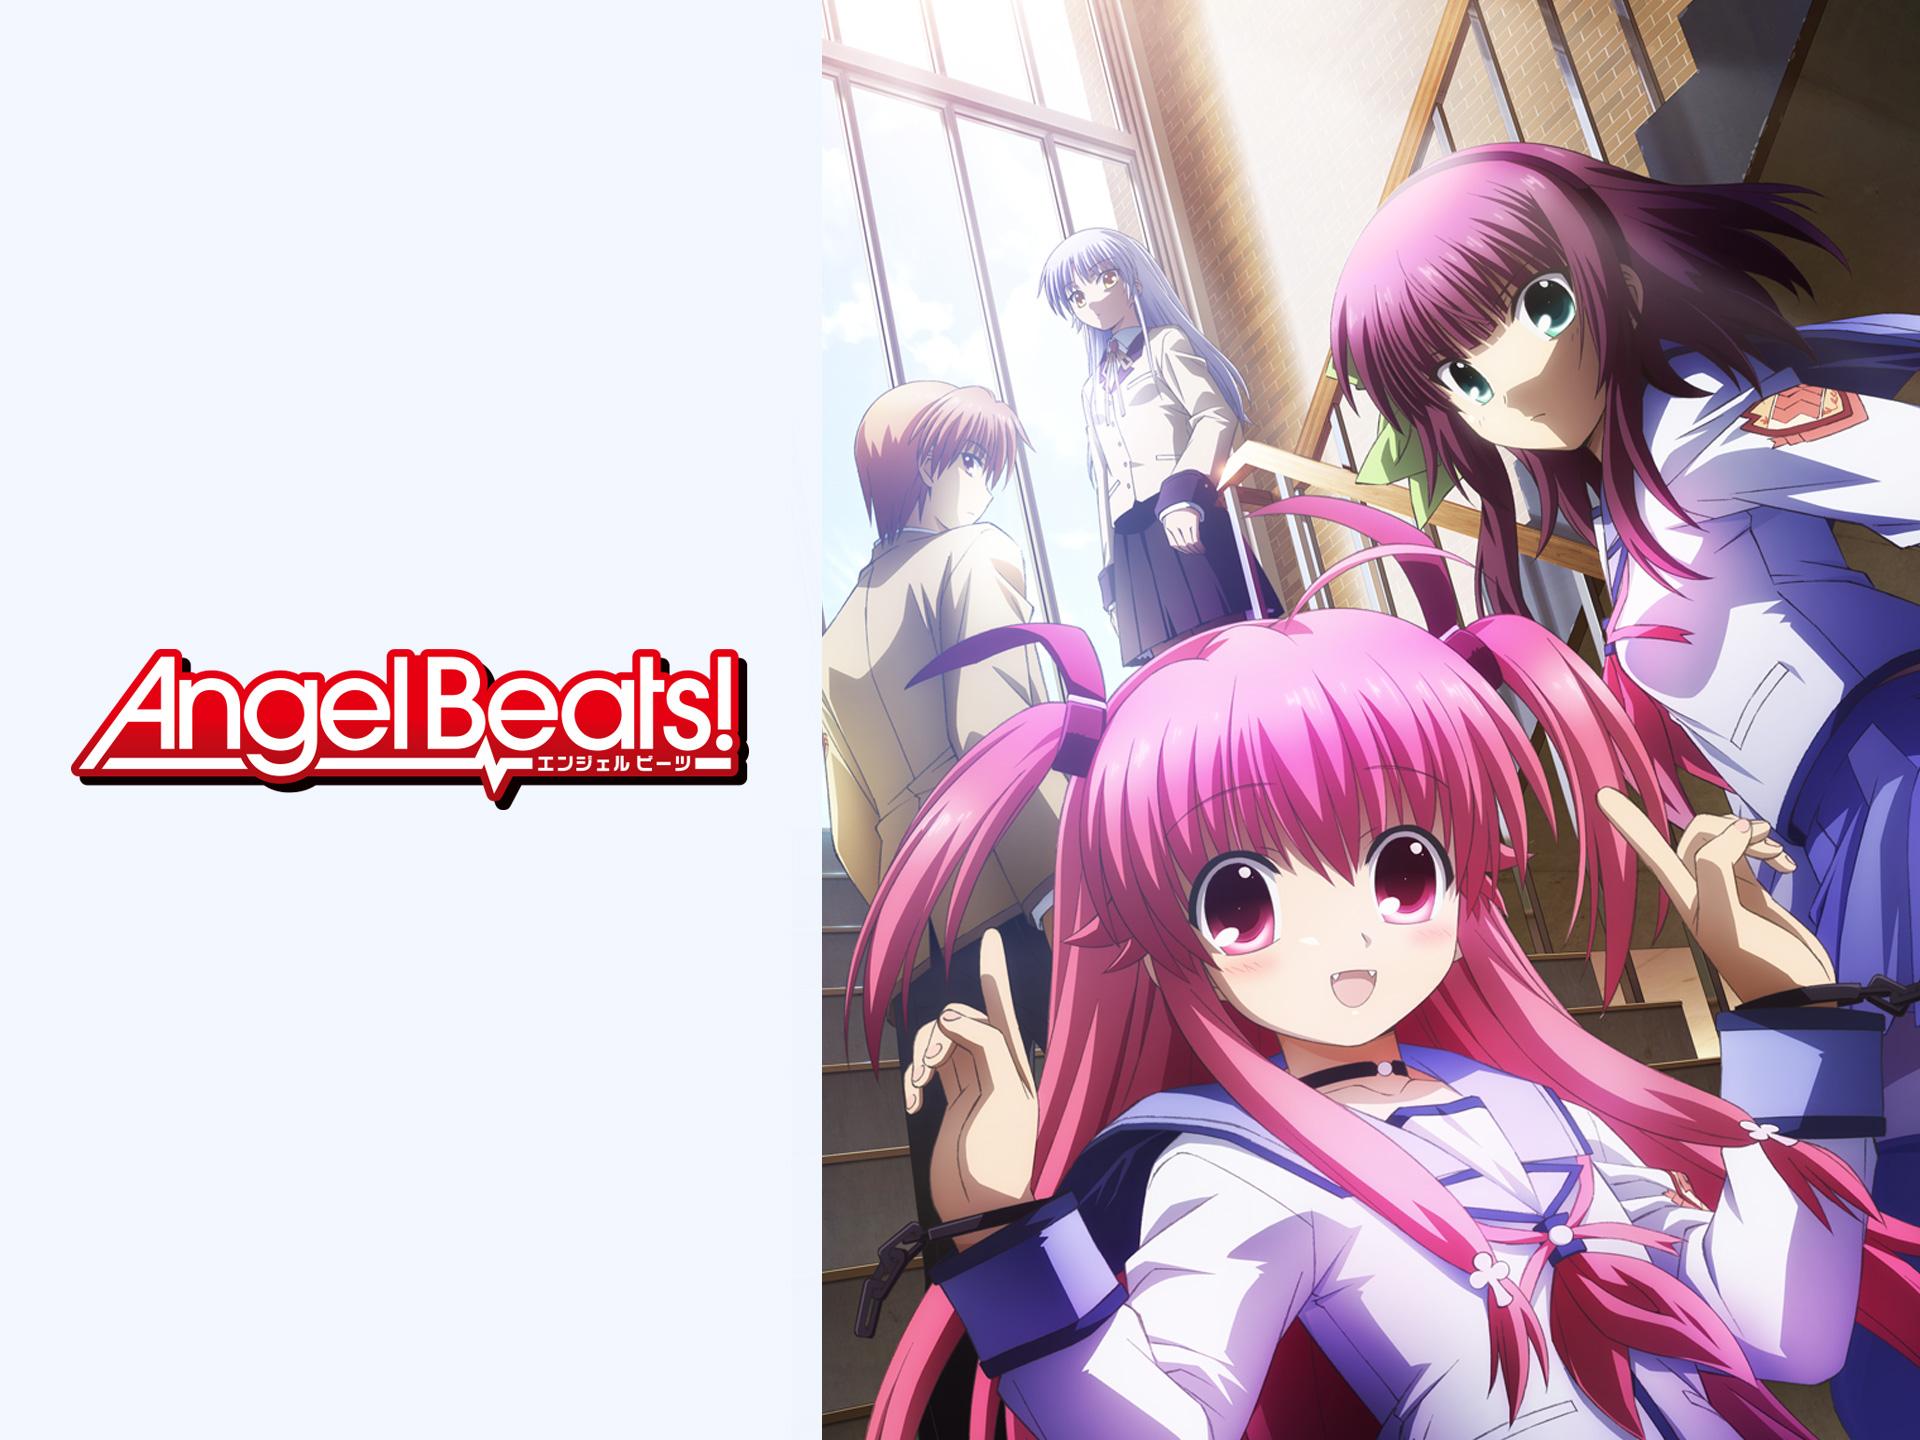 アニメ Angel Beats 第13話 Graduation フル動画 初月無料 動画配信サービスのビデオマーケット